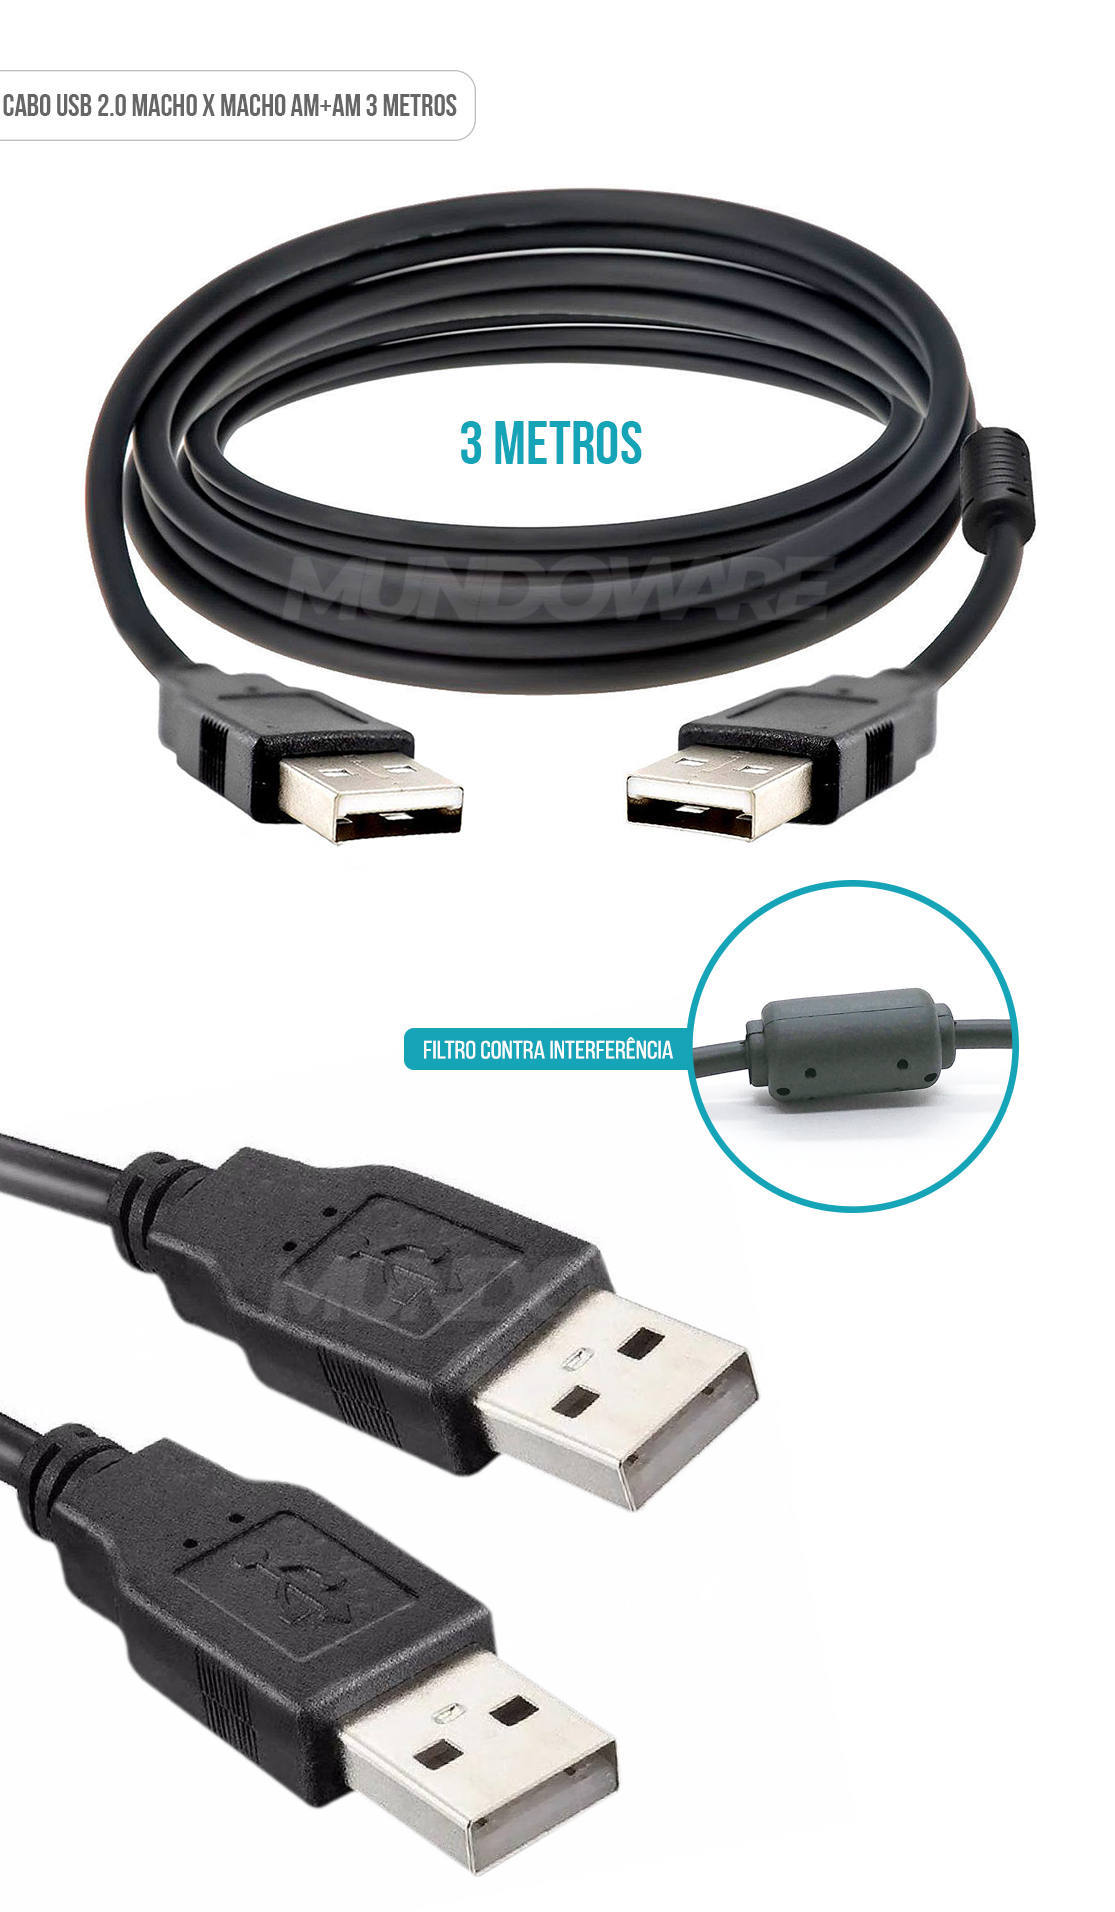 Cabo USB AM+AM com 3 Metros e Filtro contra Interferências NT 03938 Preto